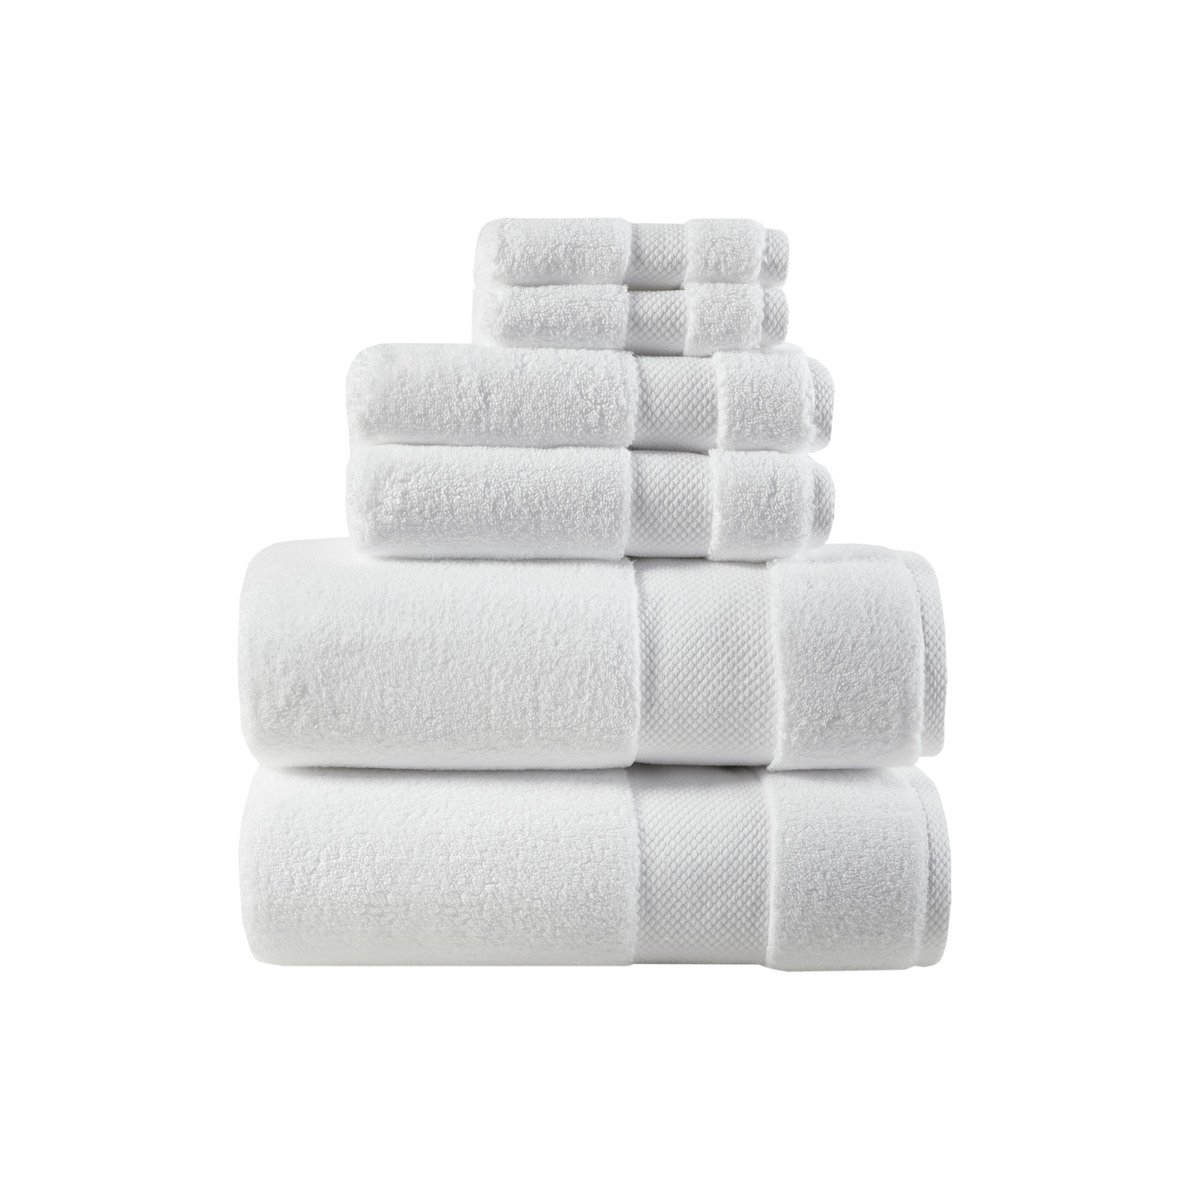 Gracie Mills   Forrest Splendor 1000gsm Cotton 6 Piece Towel Set - GRACE-12492